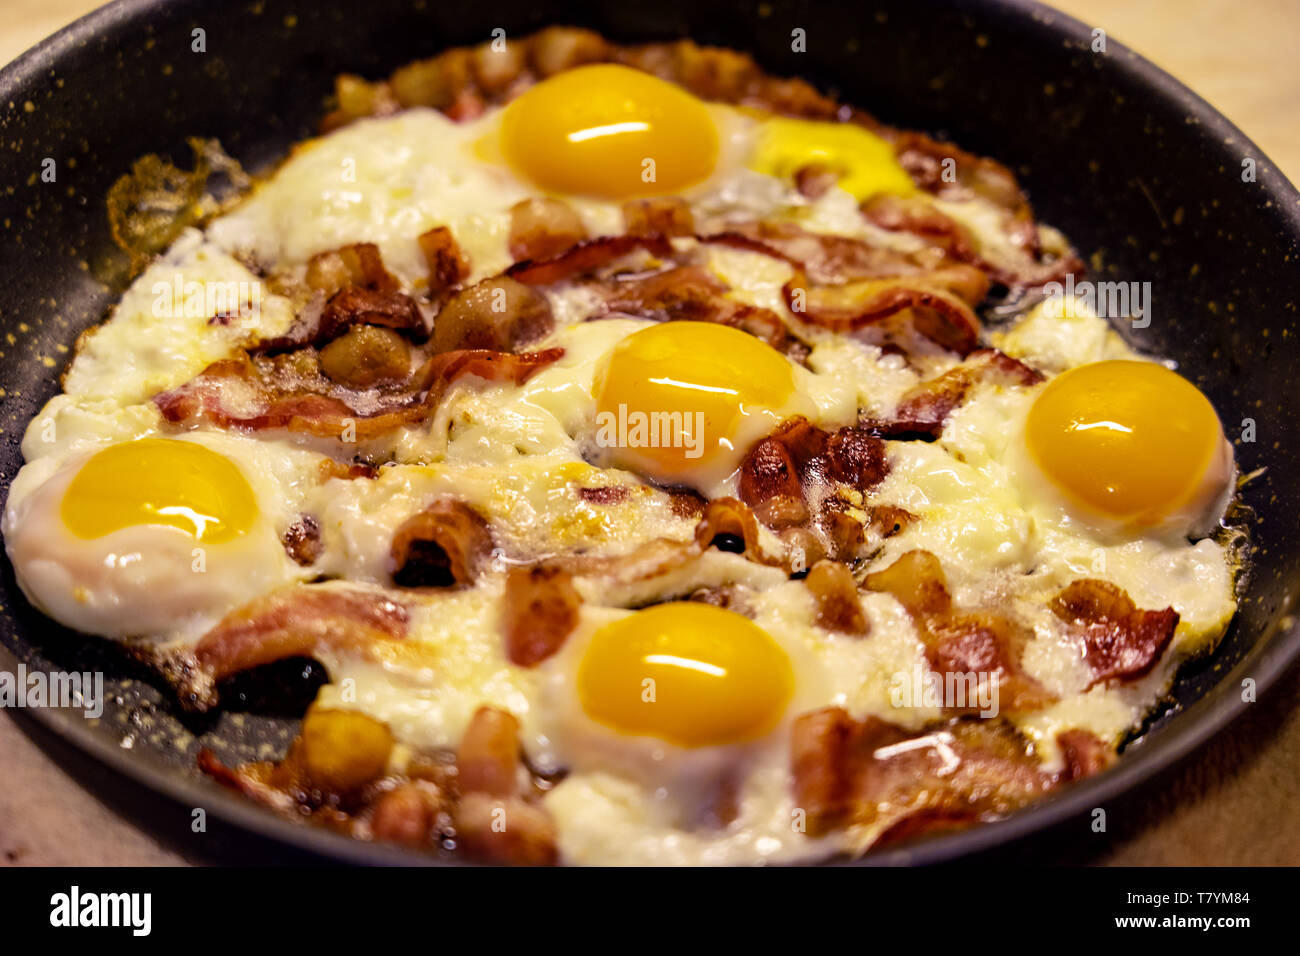 Dimensioni enormi uova e pancetta come prima colazione inglese in una padella Foto Stock